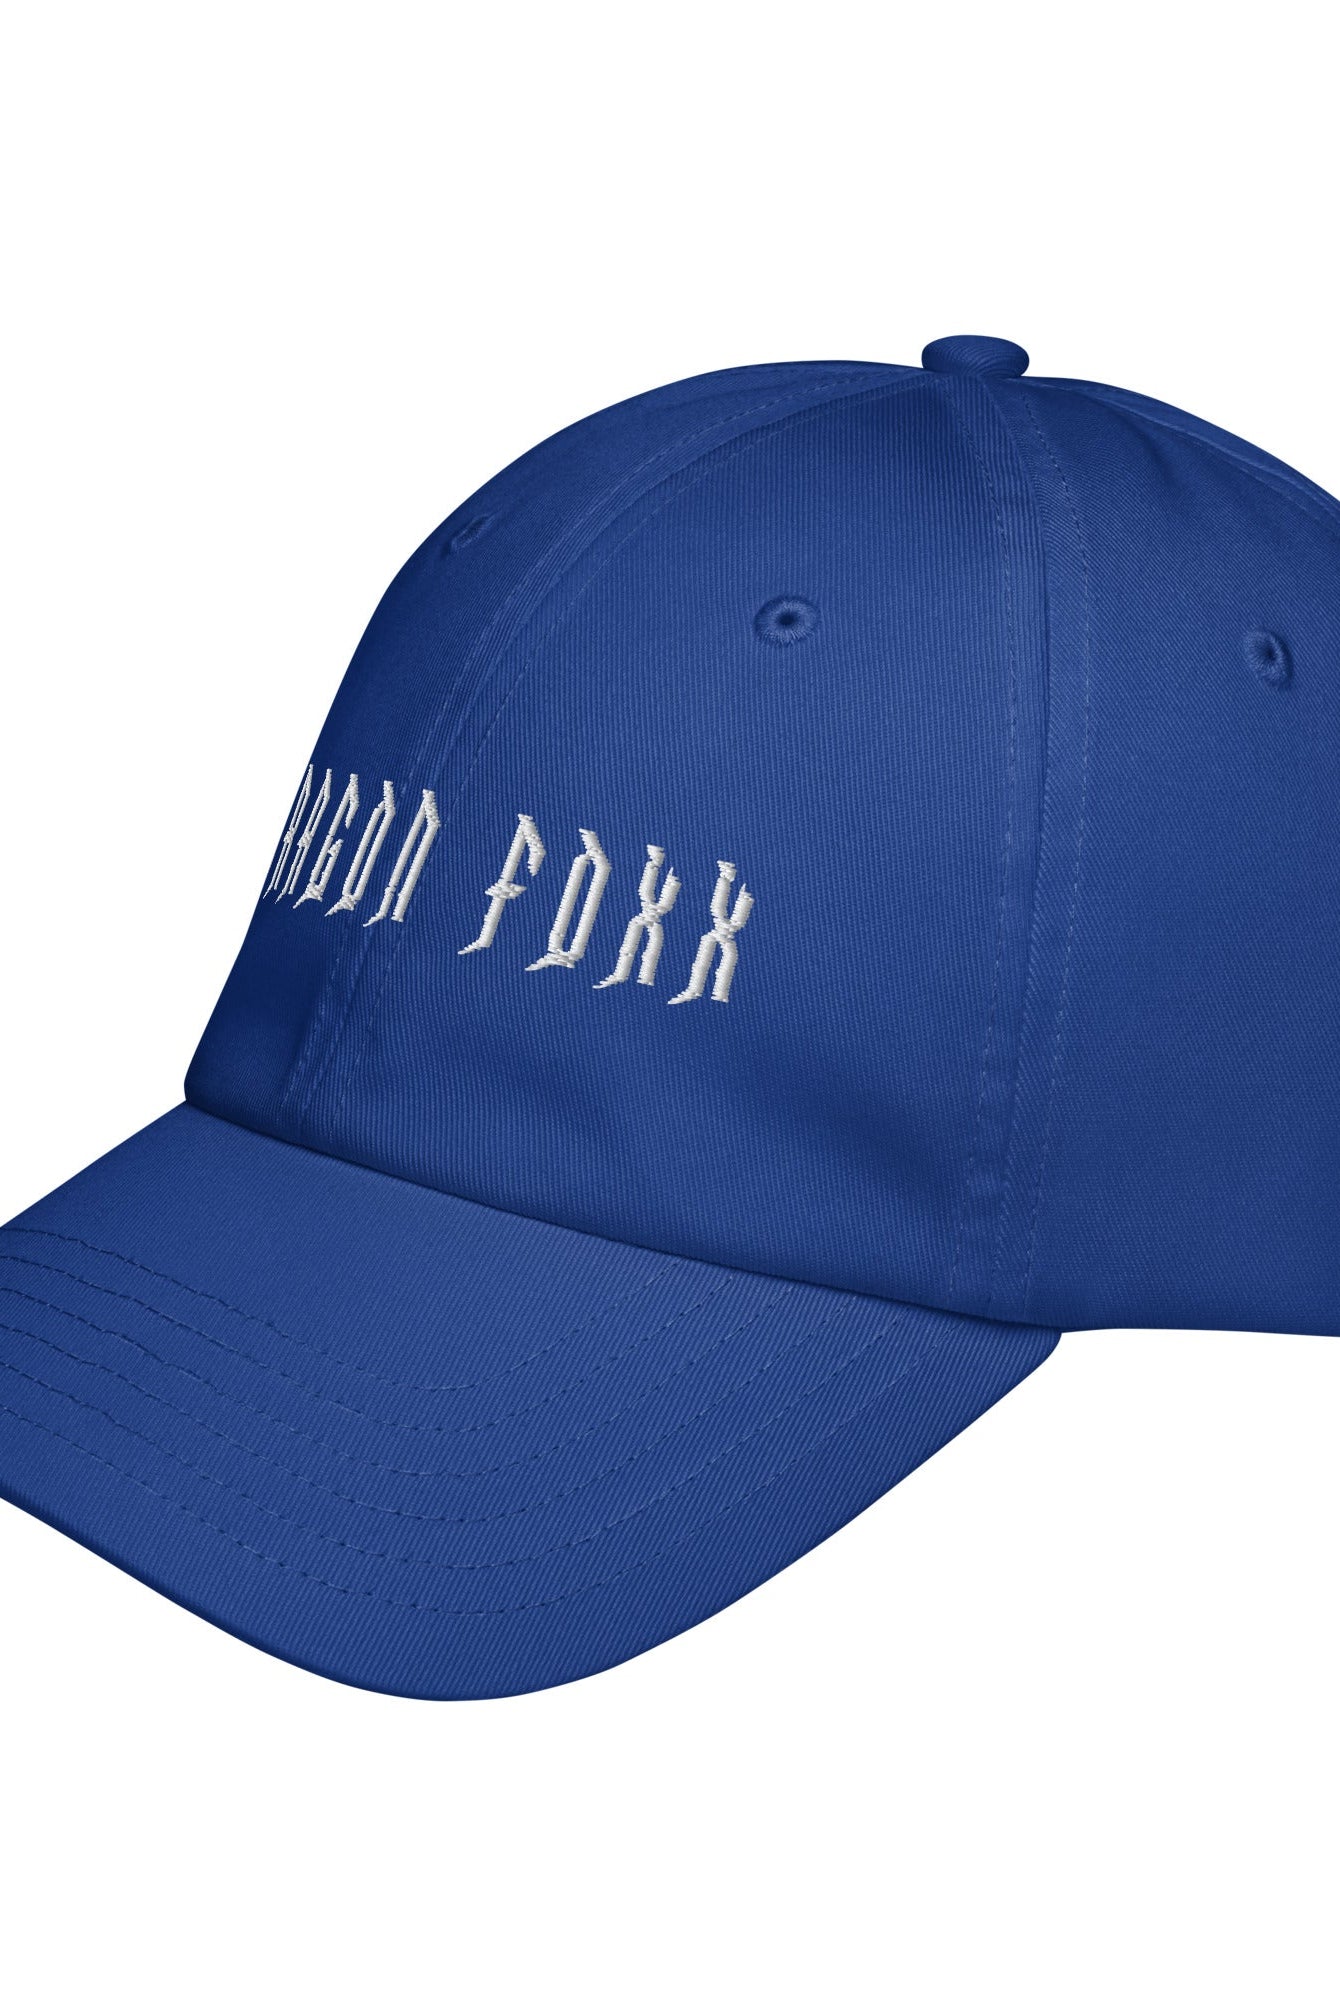 Dragon Foxx® - Under Armour® Dad Hat - Dad Hat - DRAGON FOXX™ - Dragon Foxx® - Under Armour® Dad Hat - 6473955_19346 - Royal Blue - Accessories - Black - Dad Hats